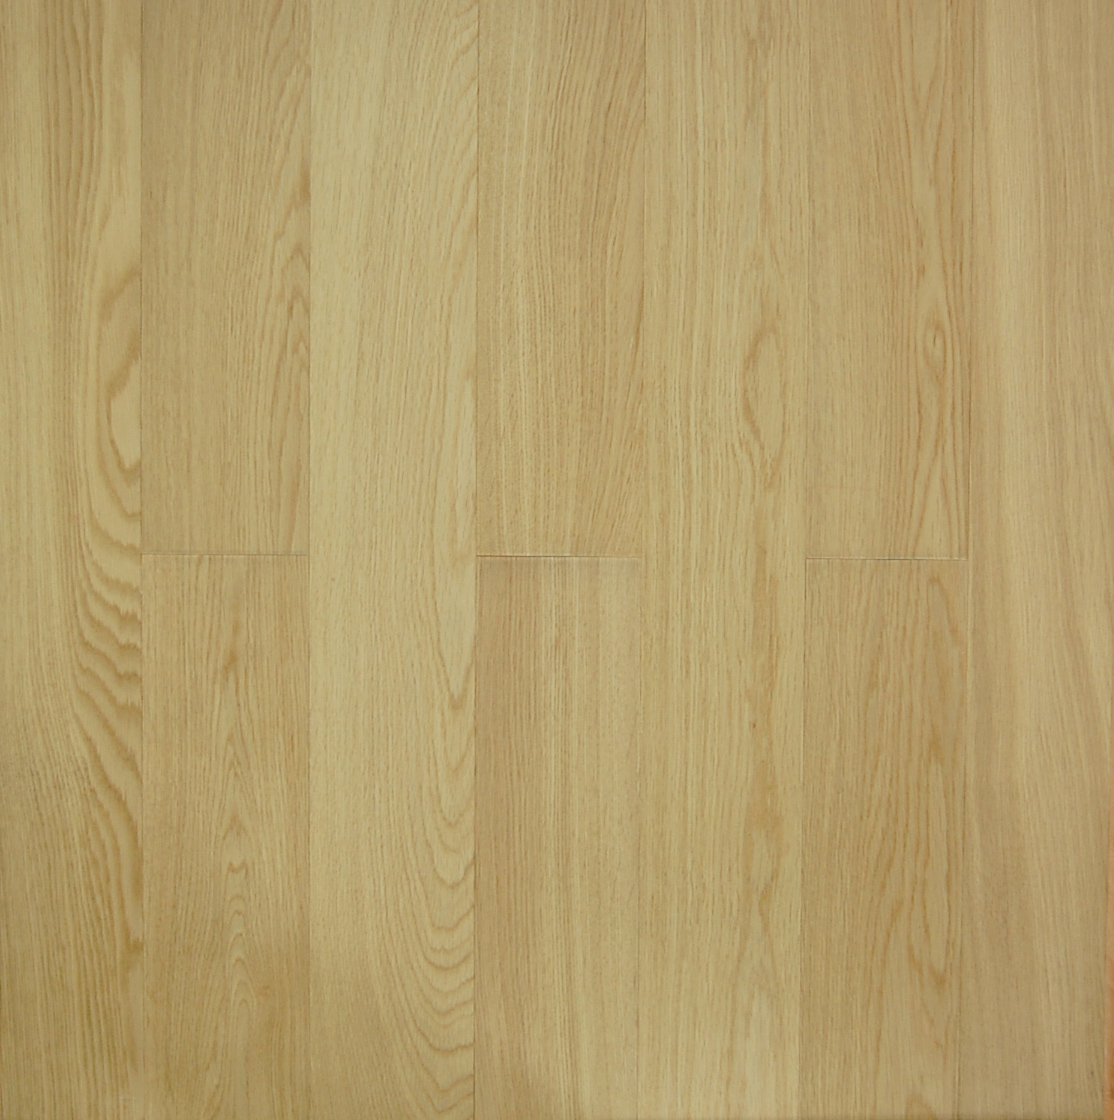 oak engineered hardwood flooring